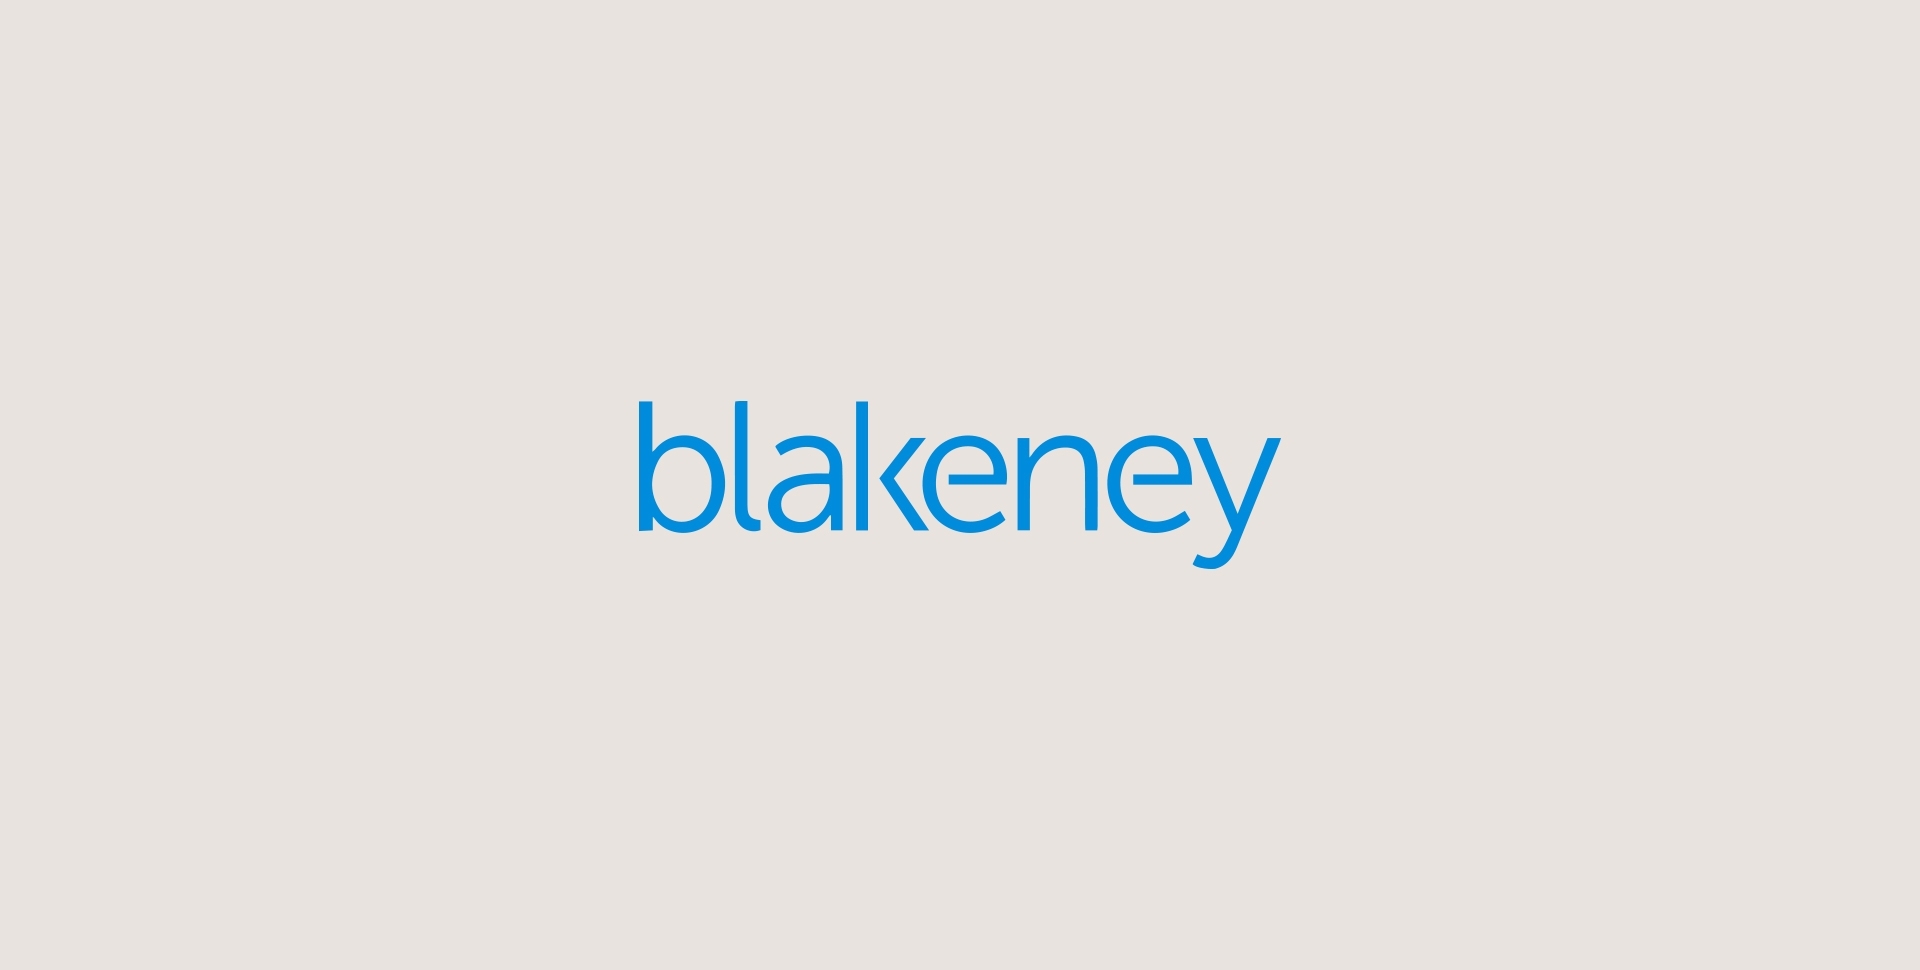 Blakeney logo sized old